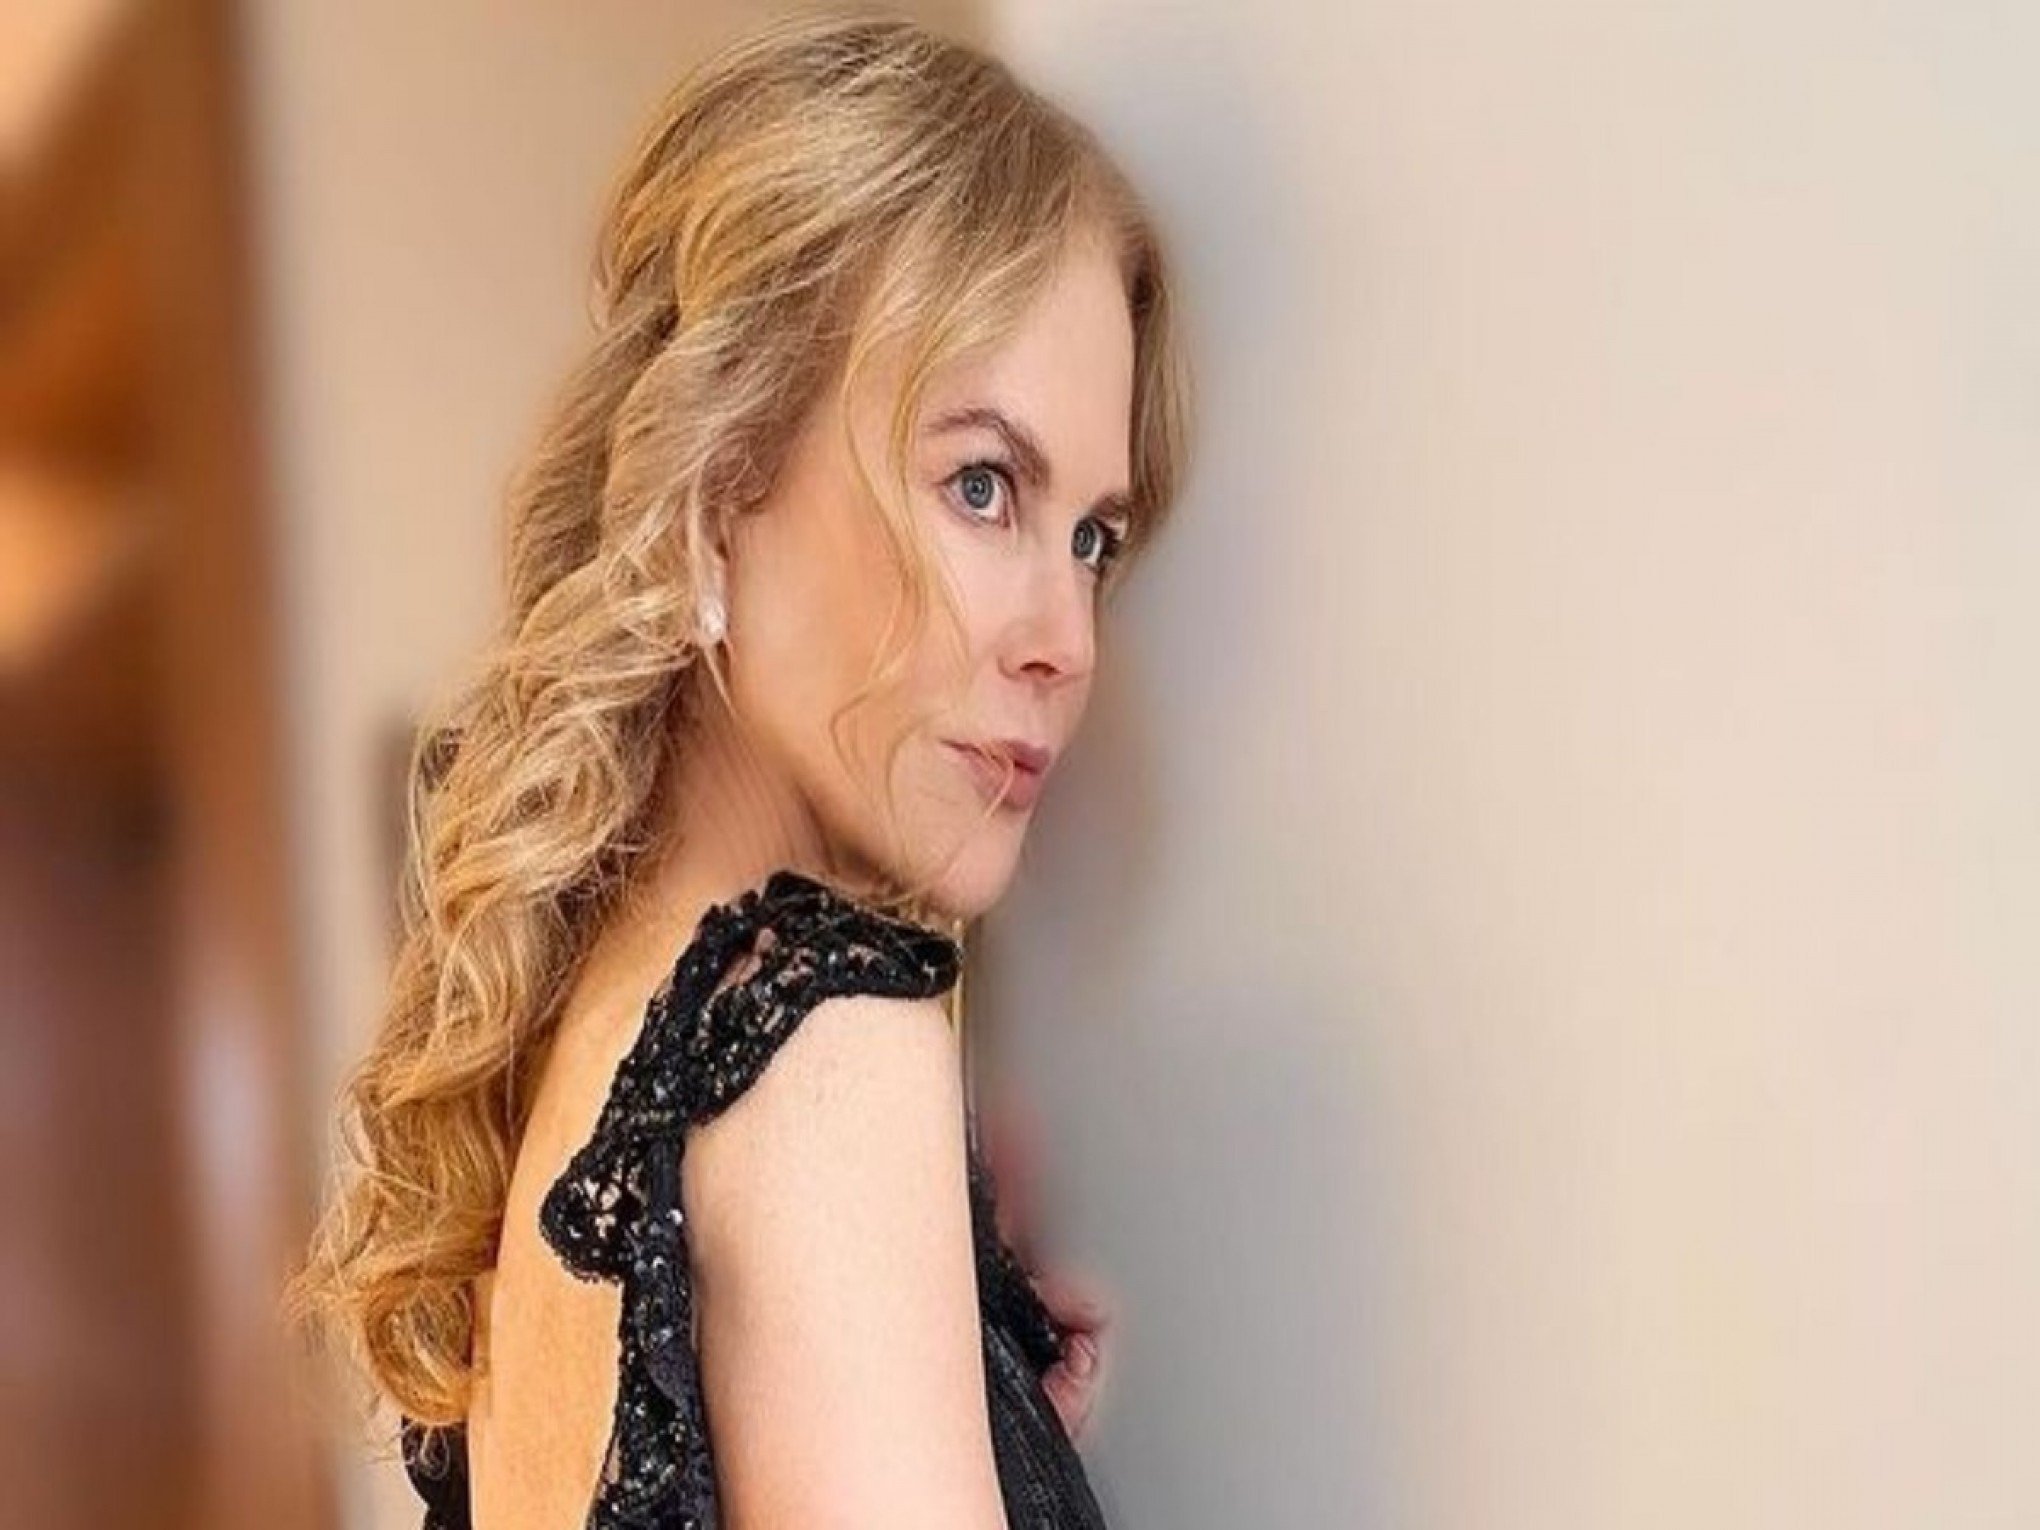 Nicole Kidman vai estrelar série da HBO inspirada em crime real - Estadão